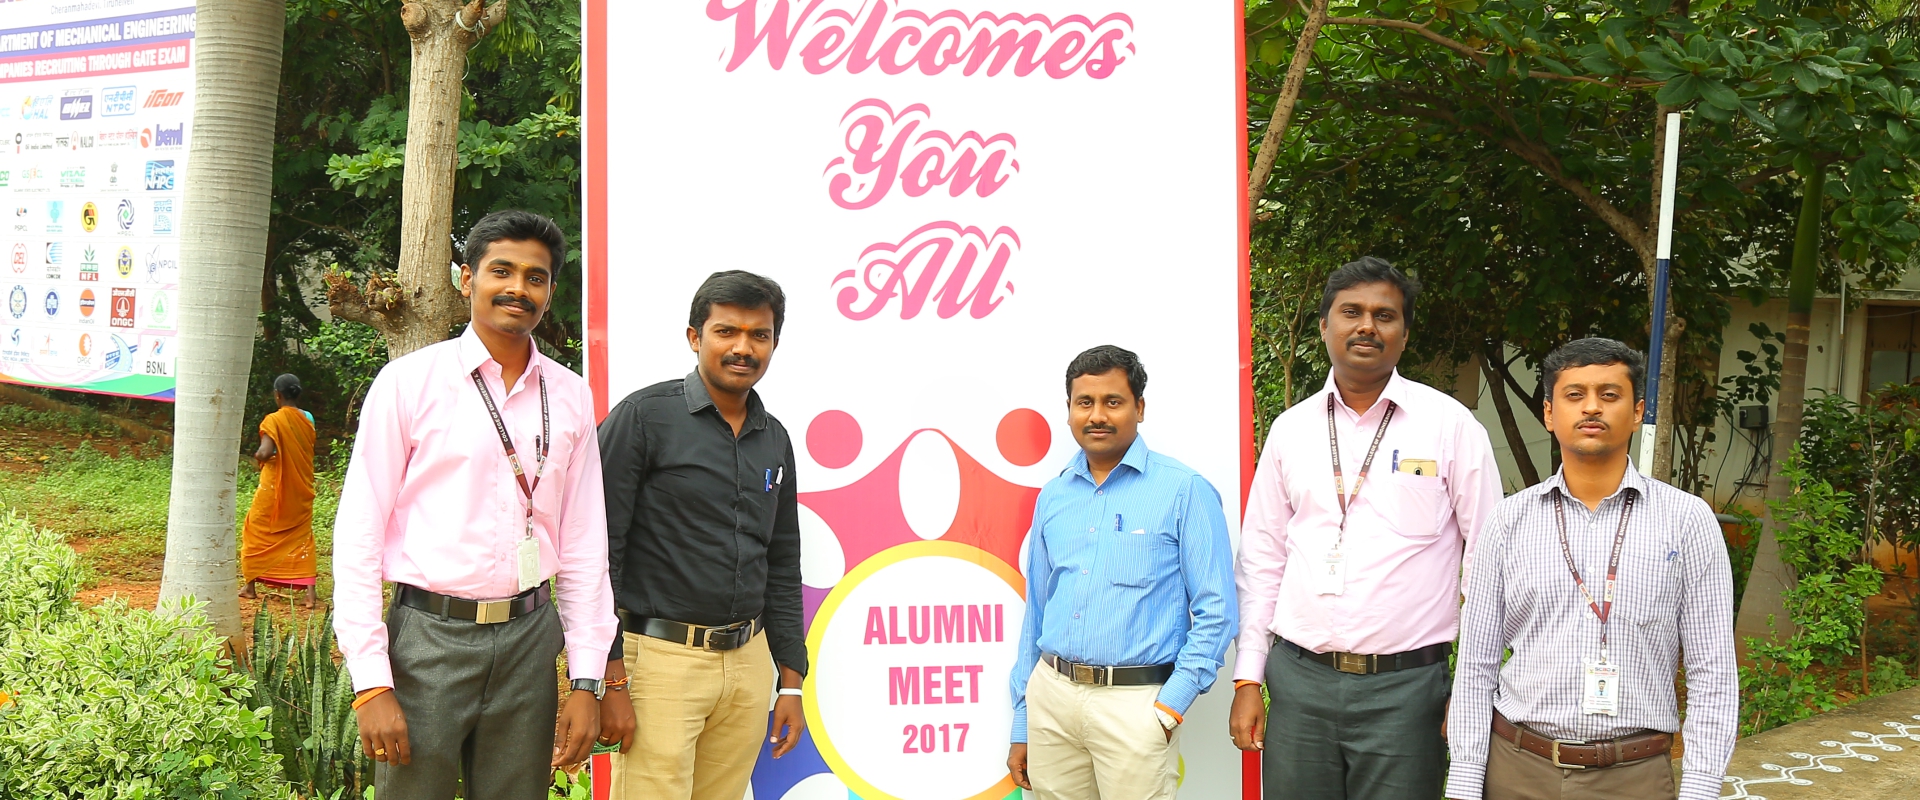 <h2>Alumni Meet 2017</h2>